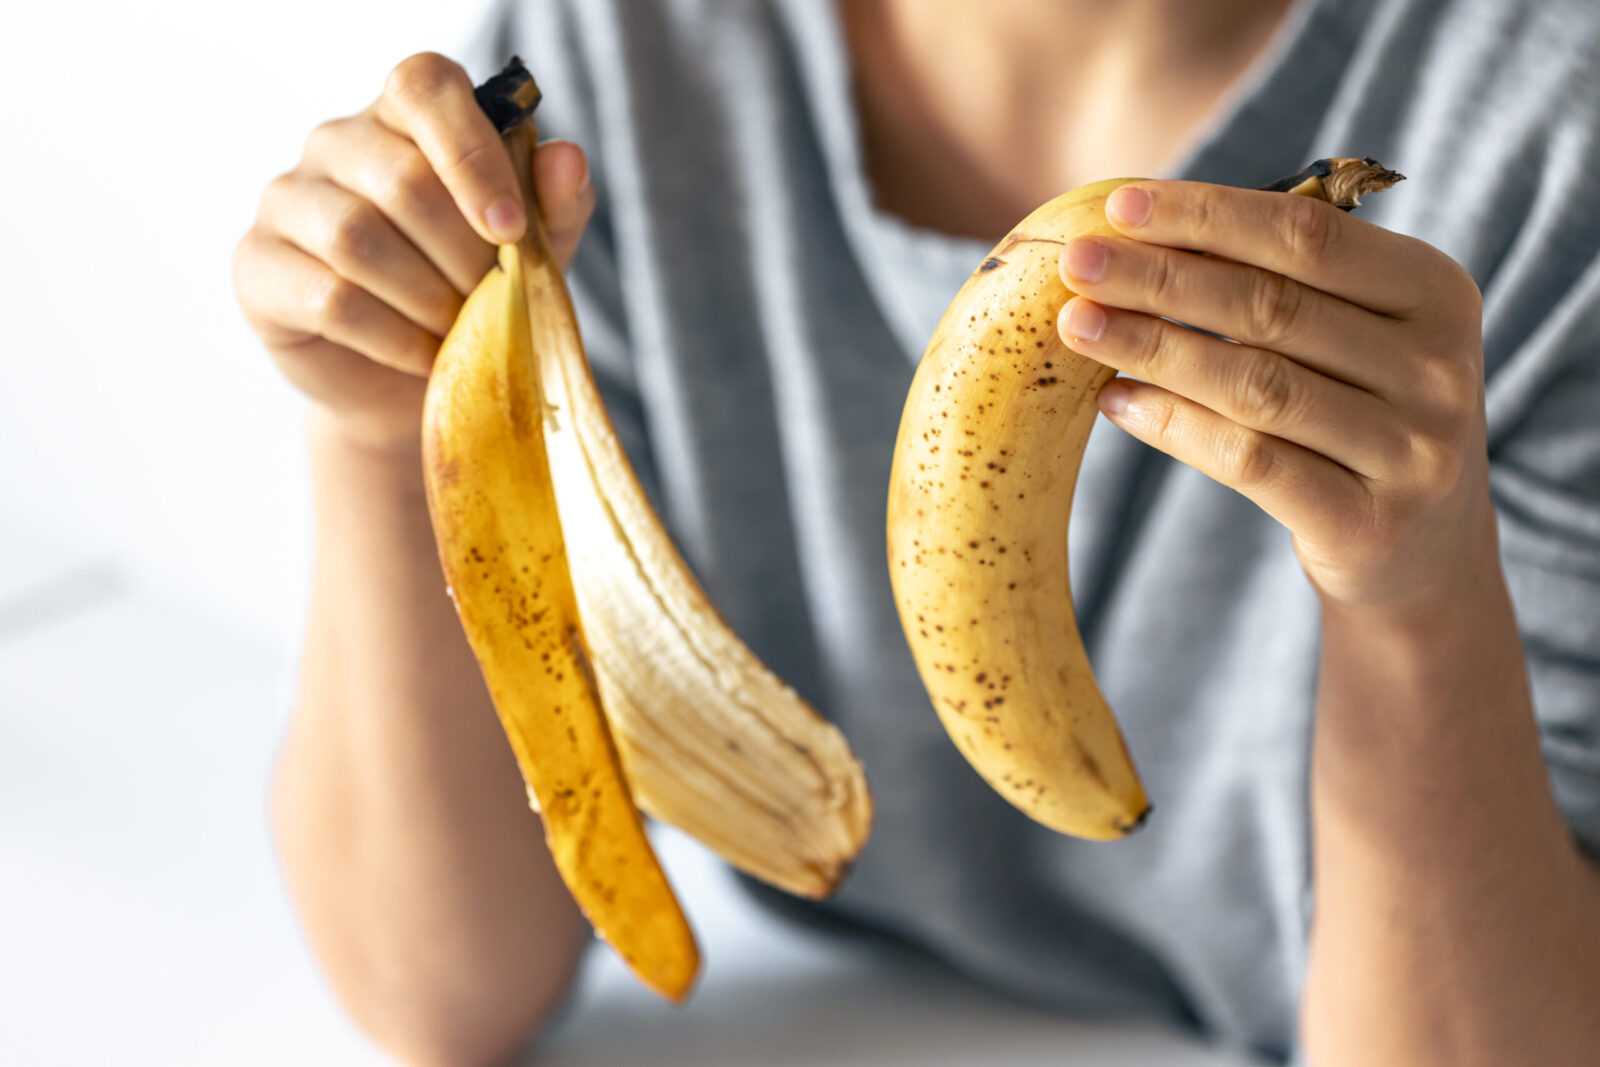 Casca de banana para pele: o segredo natural para um rosto rejuvenescido